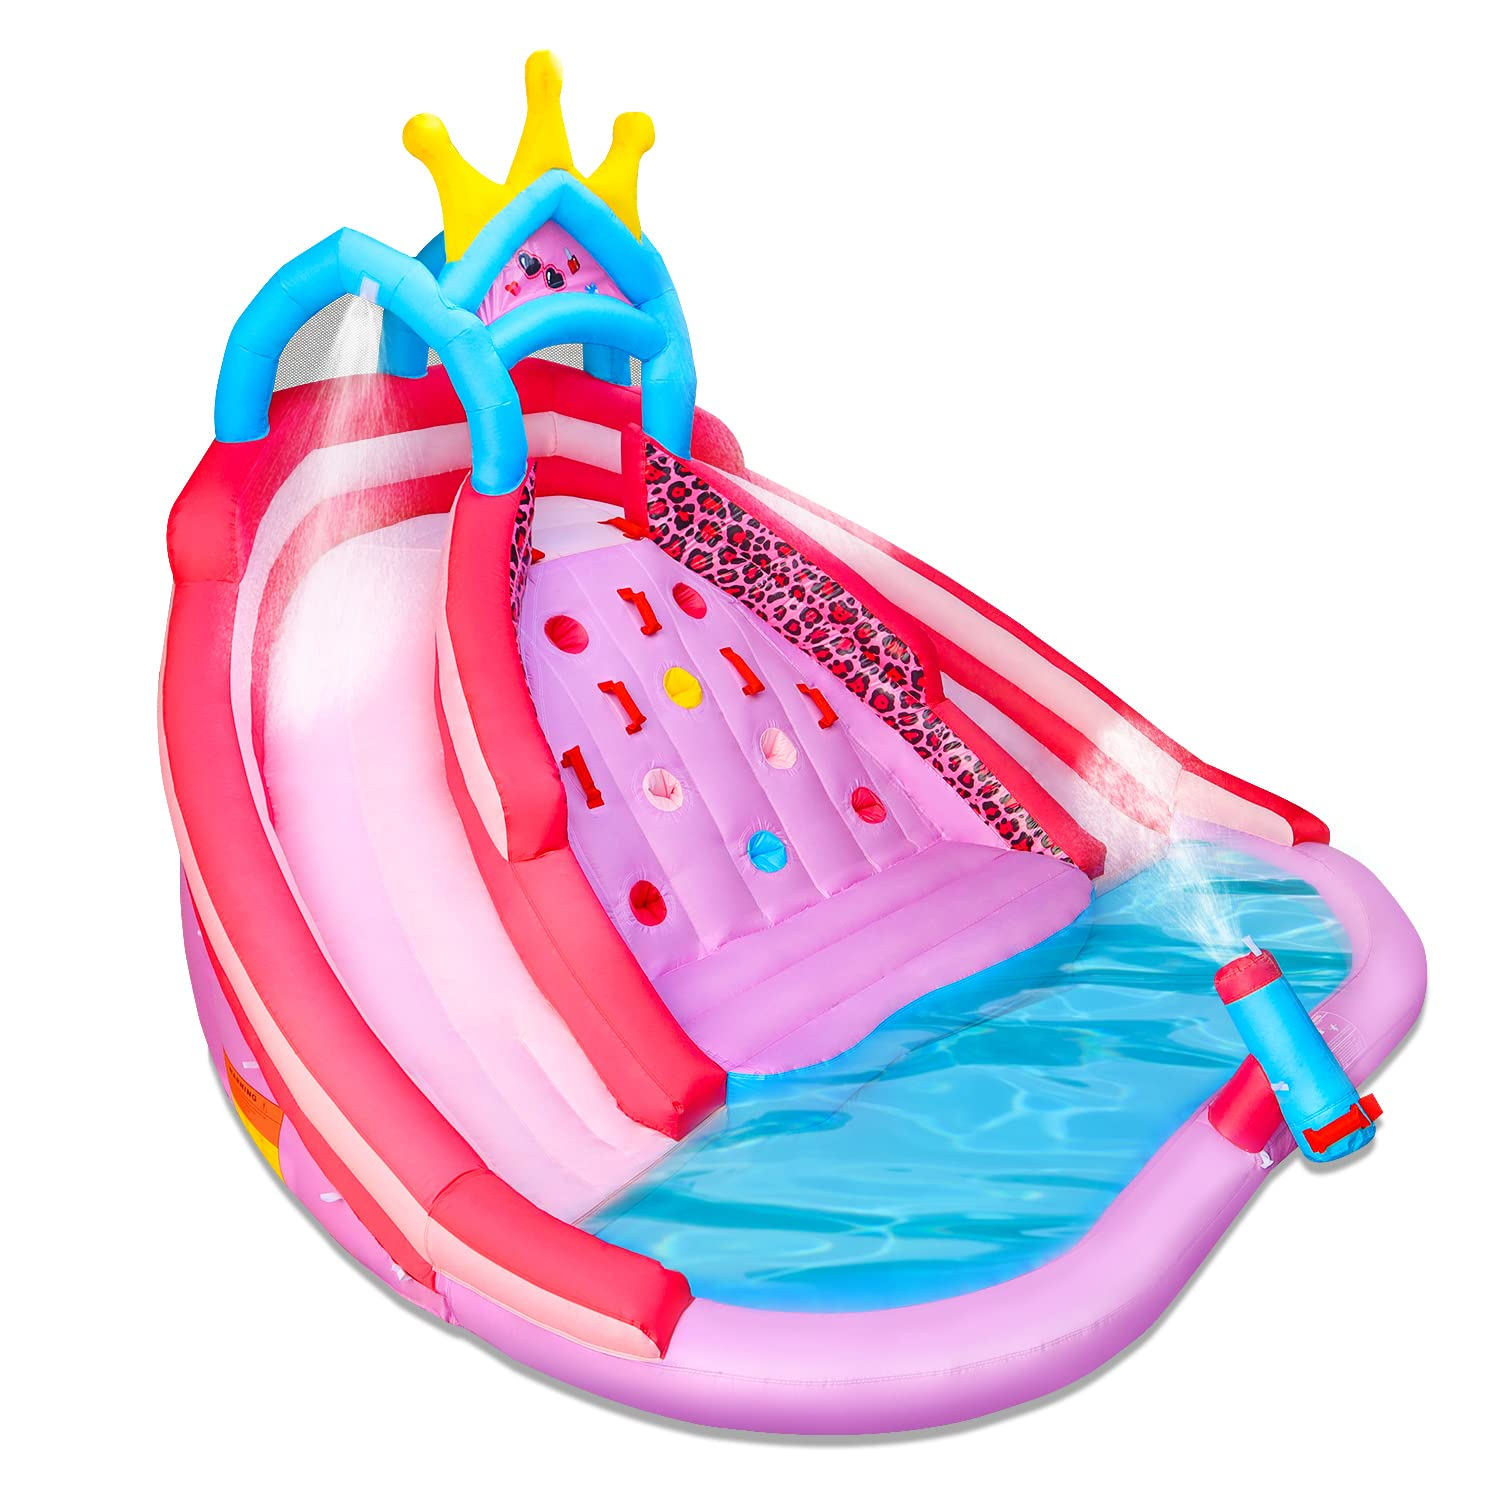 Cina 6 in 1 gonfiabile Bouncer Jump Slide Princess Castello gonfiabile per  feste per ragazze e bambini con grande vasca per palline, canestro da  basket rosa, ventilatore, kit di riparazione Fornitori, produttori